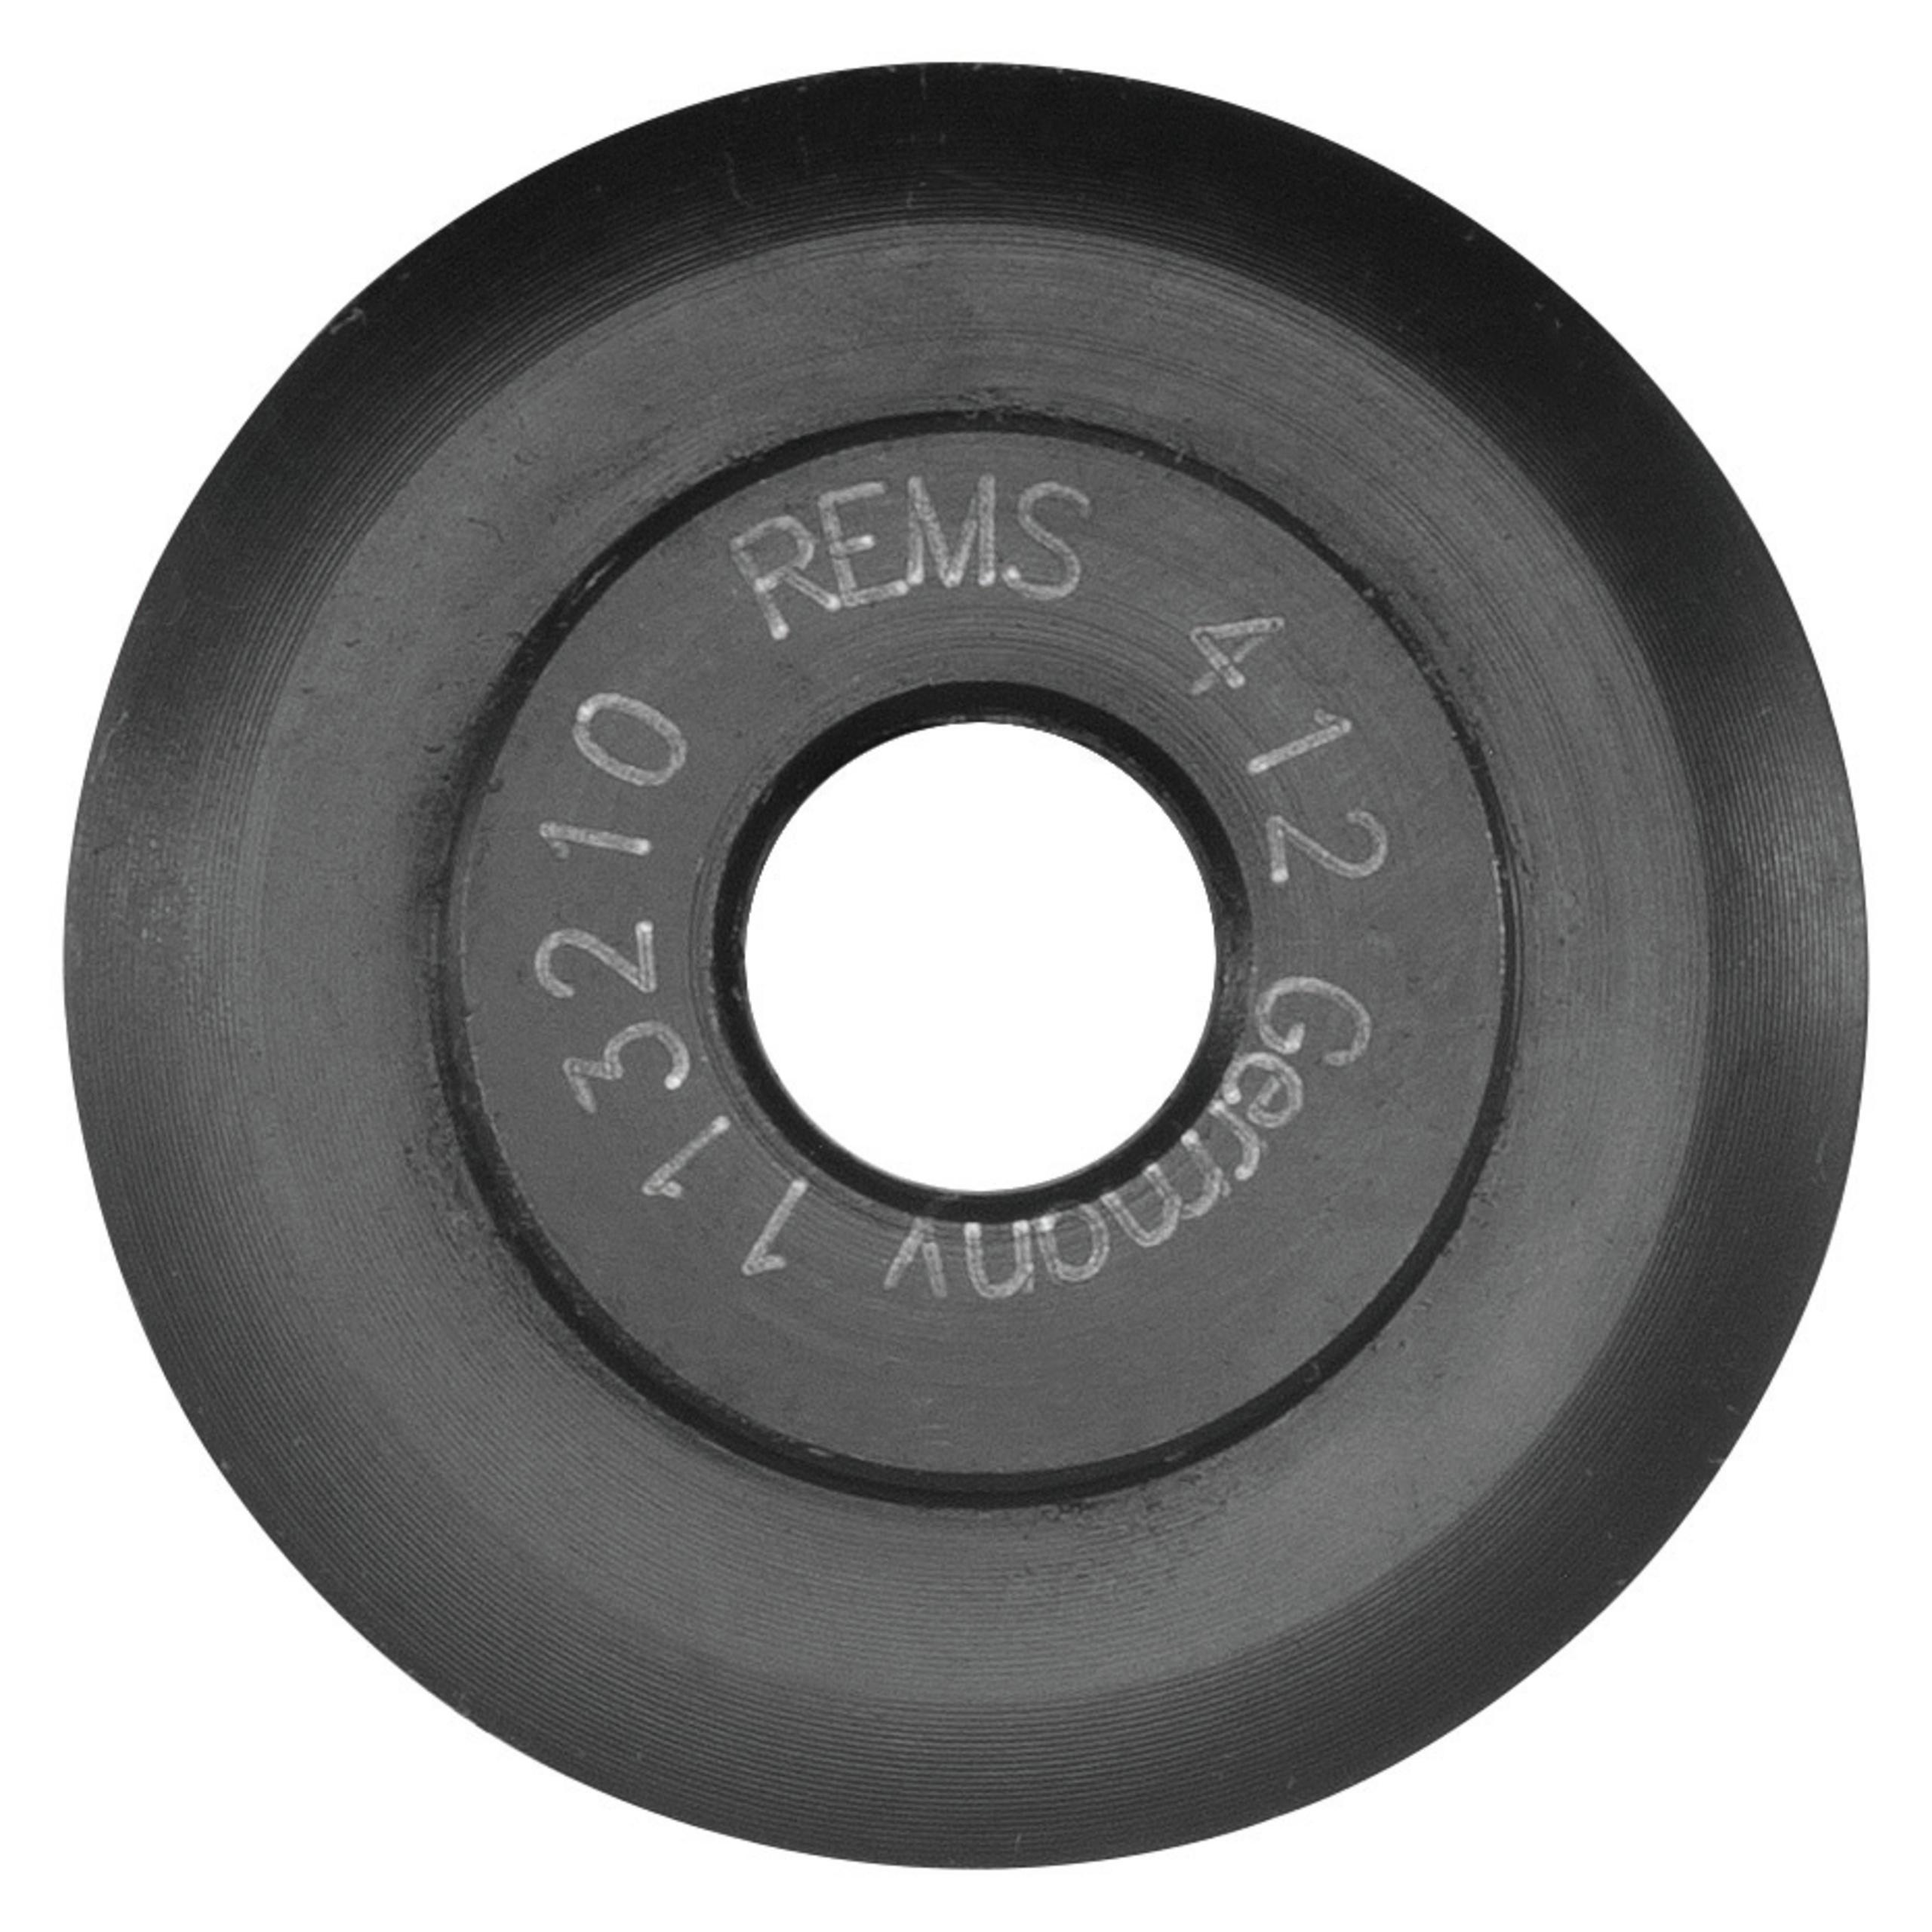 Rotella di ricambio per tagliatubi REMS Cu-INOX 3-120, s4, in acciaio speciale